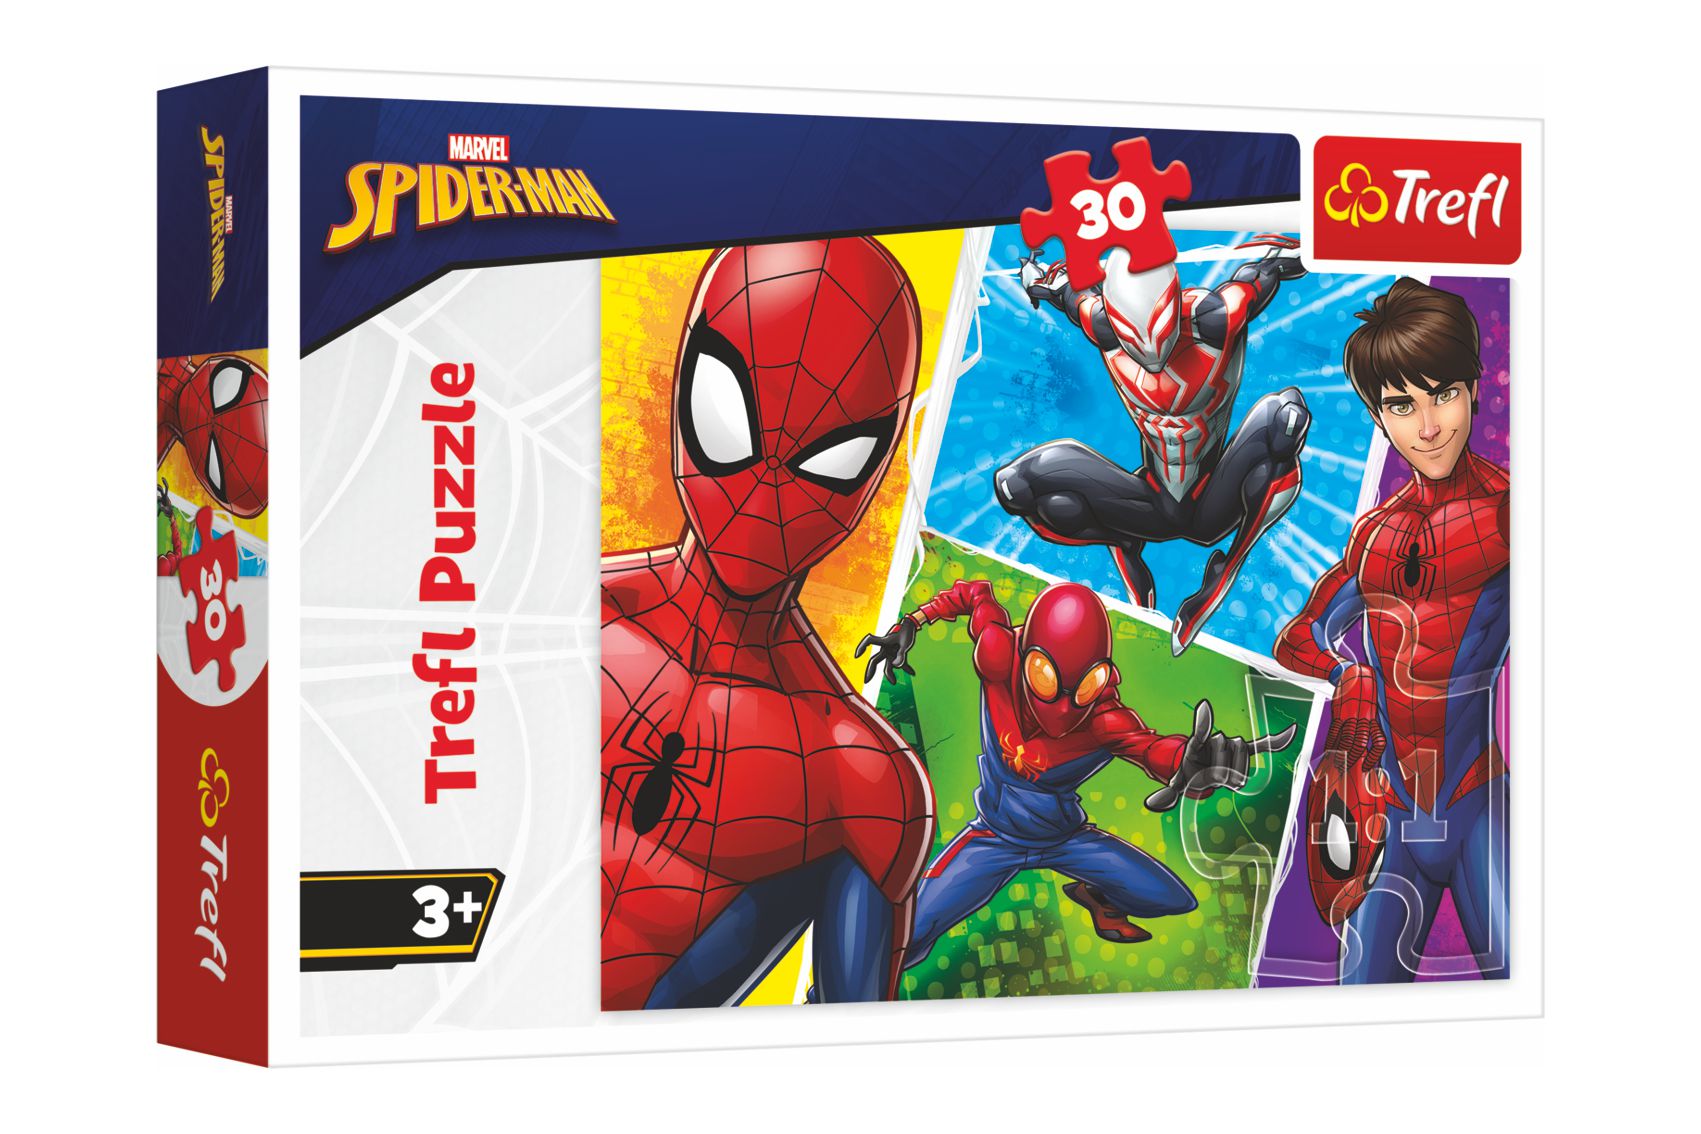 Trefl Puzzle Spiderman a Miguel/Disney 27x20cm 30 dílků v krabičce 21x14x4cm